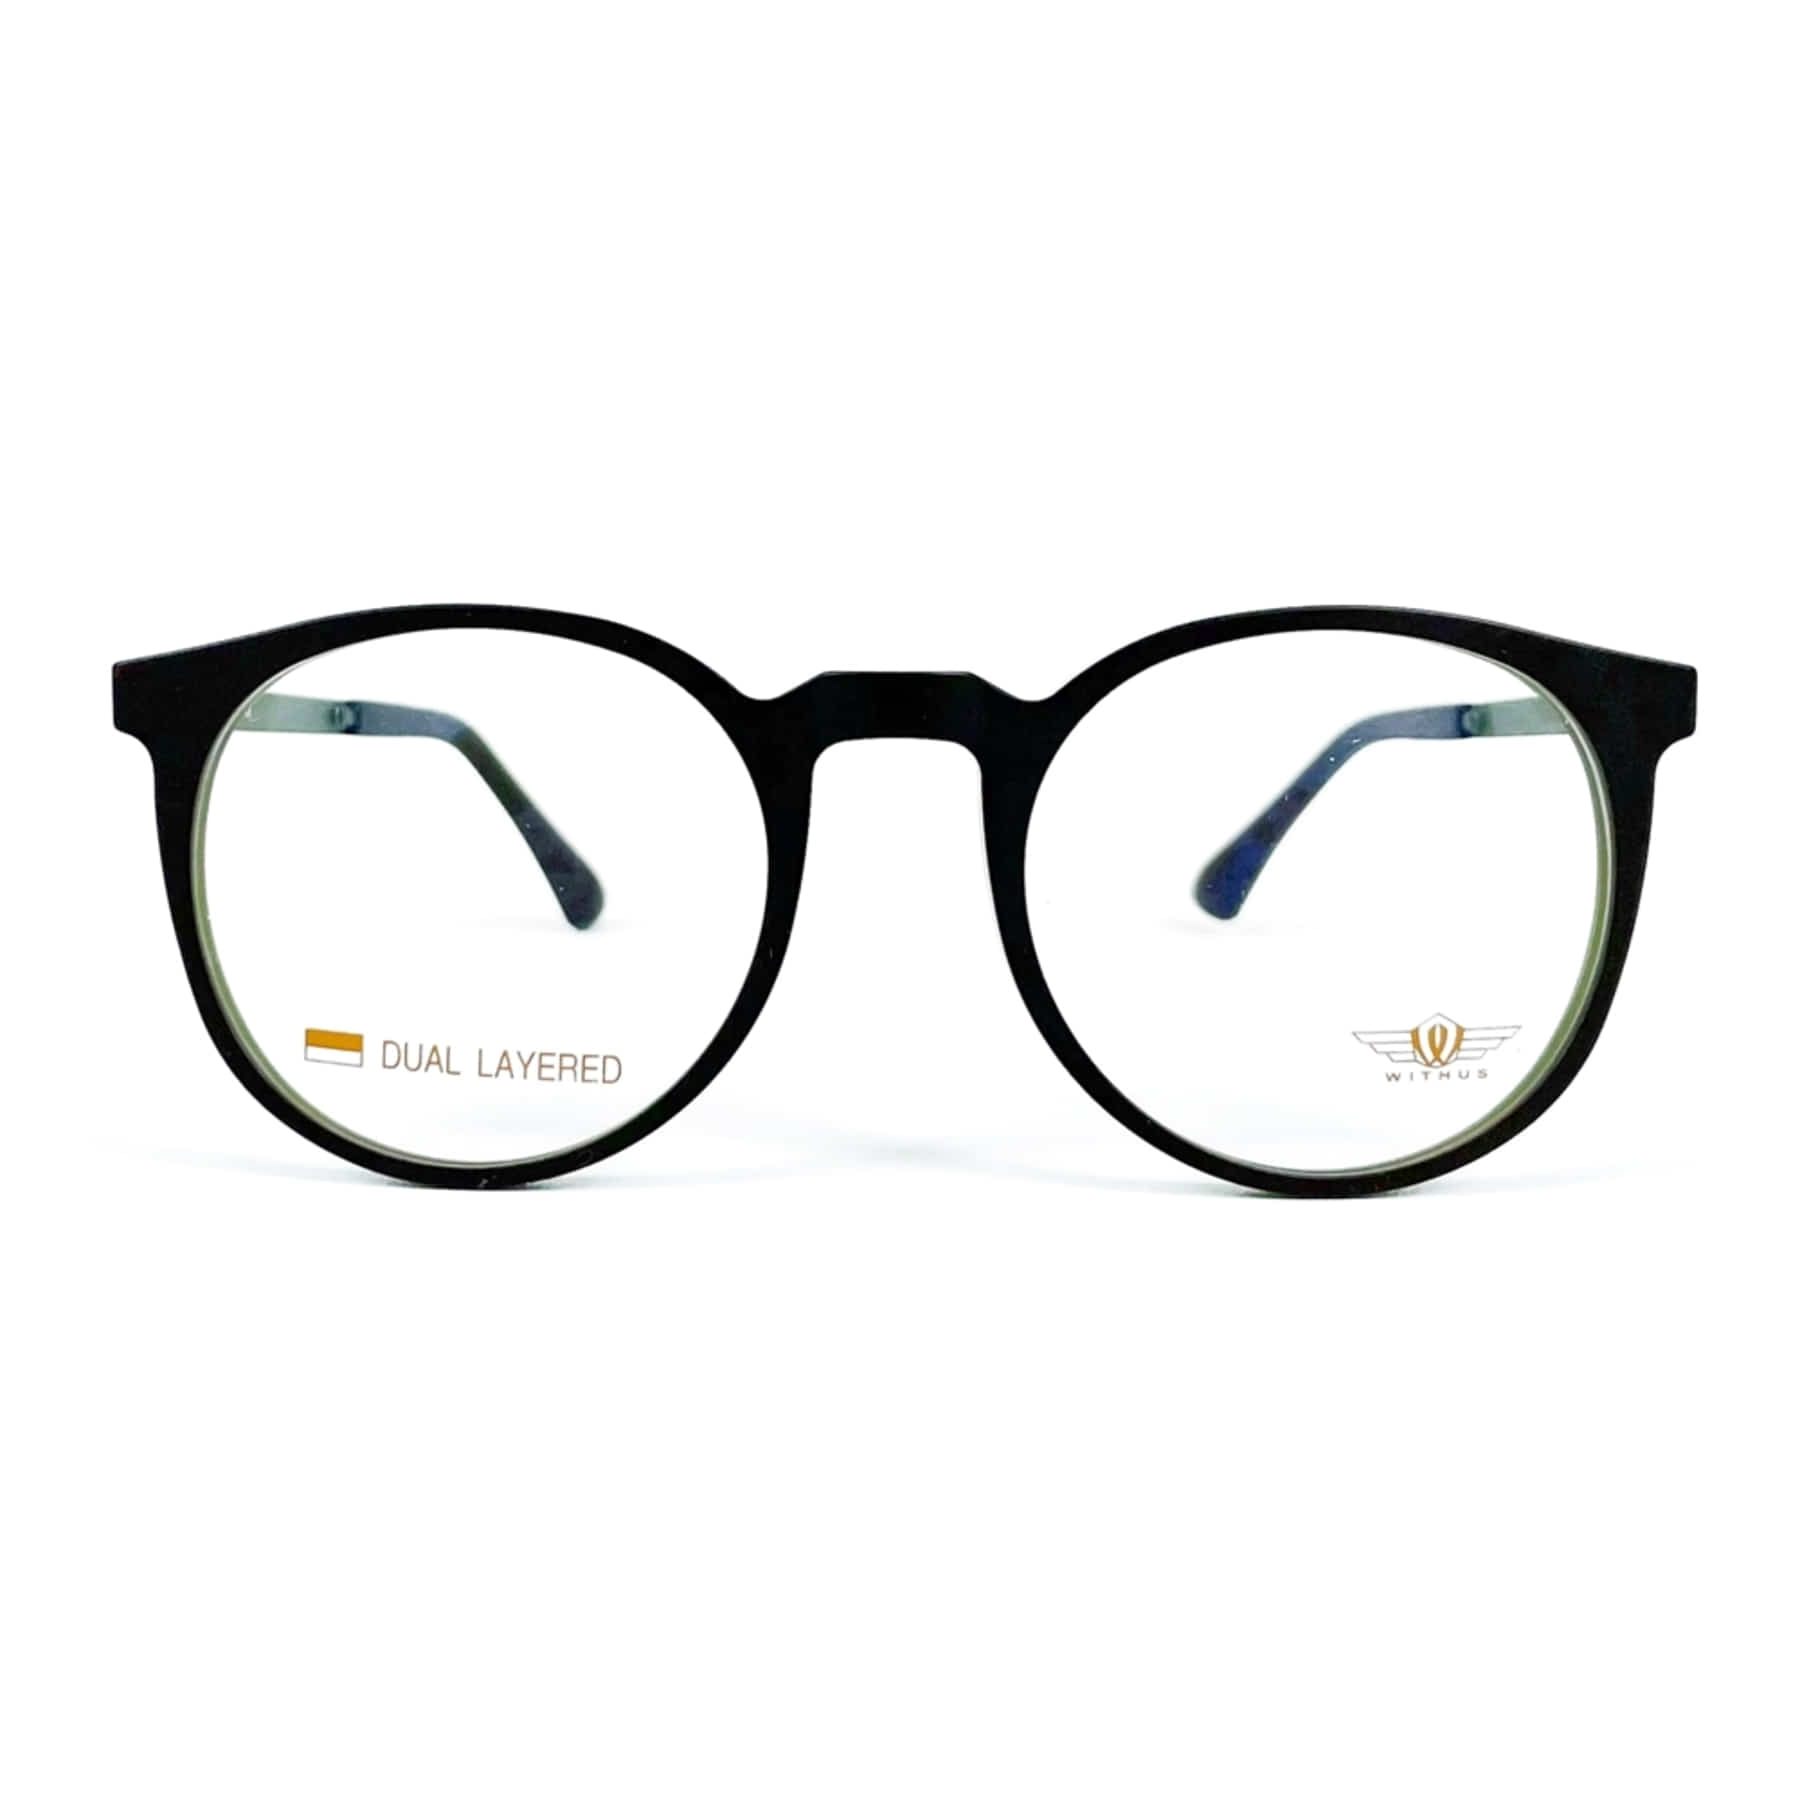 WITHUS-7350, Korean glasses, sunglasses, eyeglasses, glasses